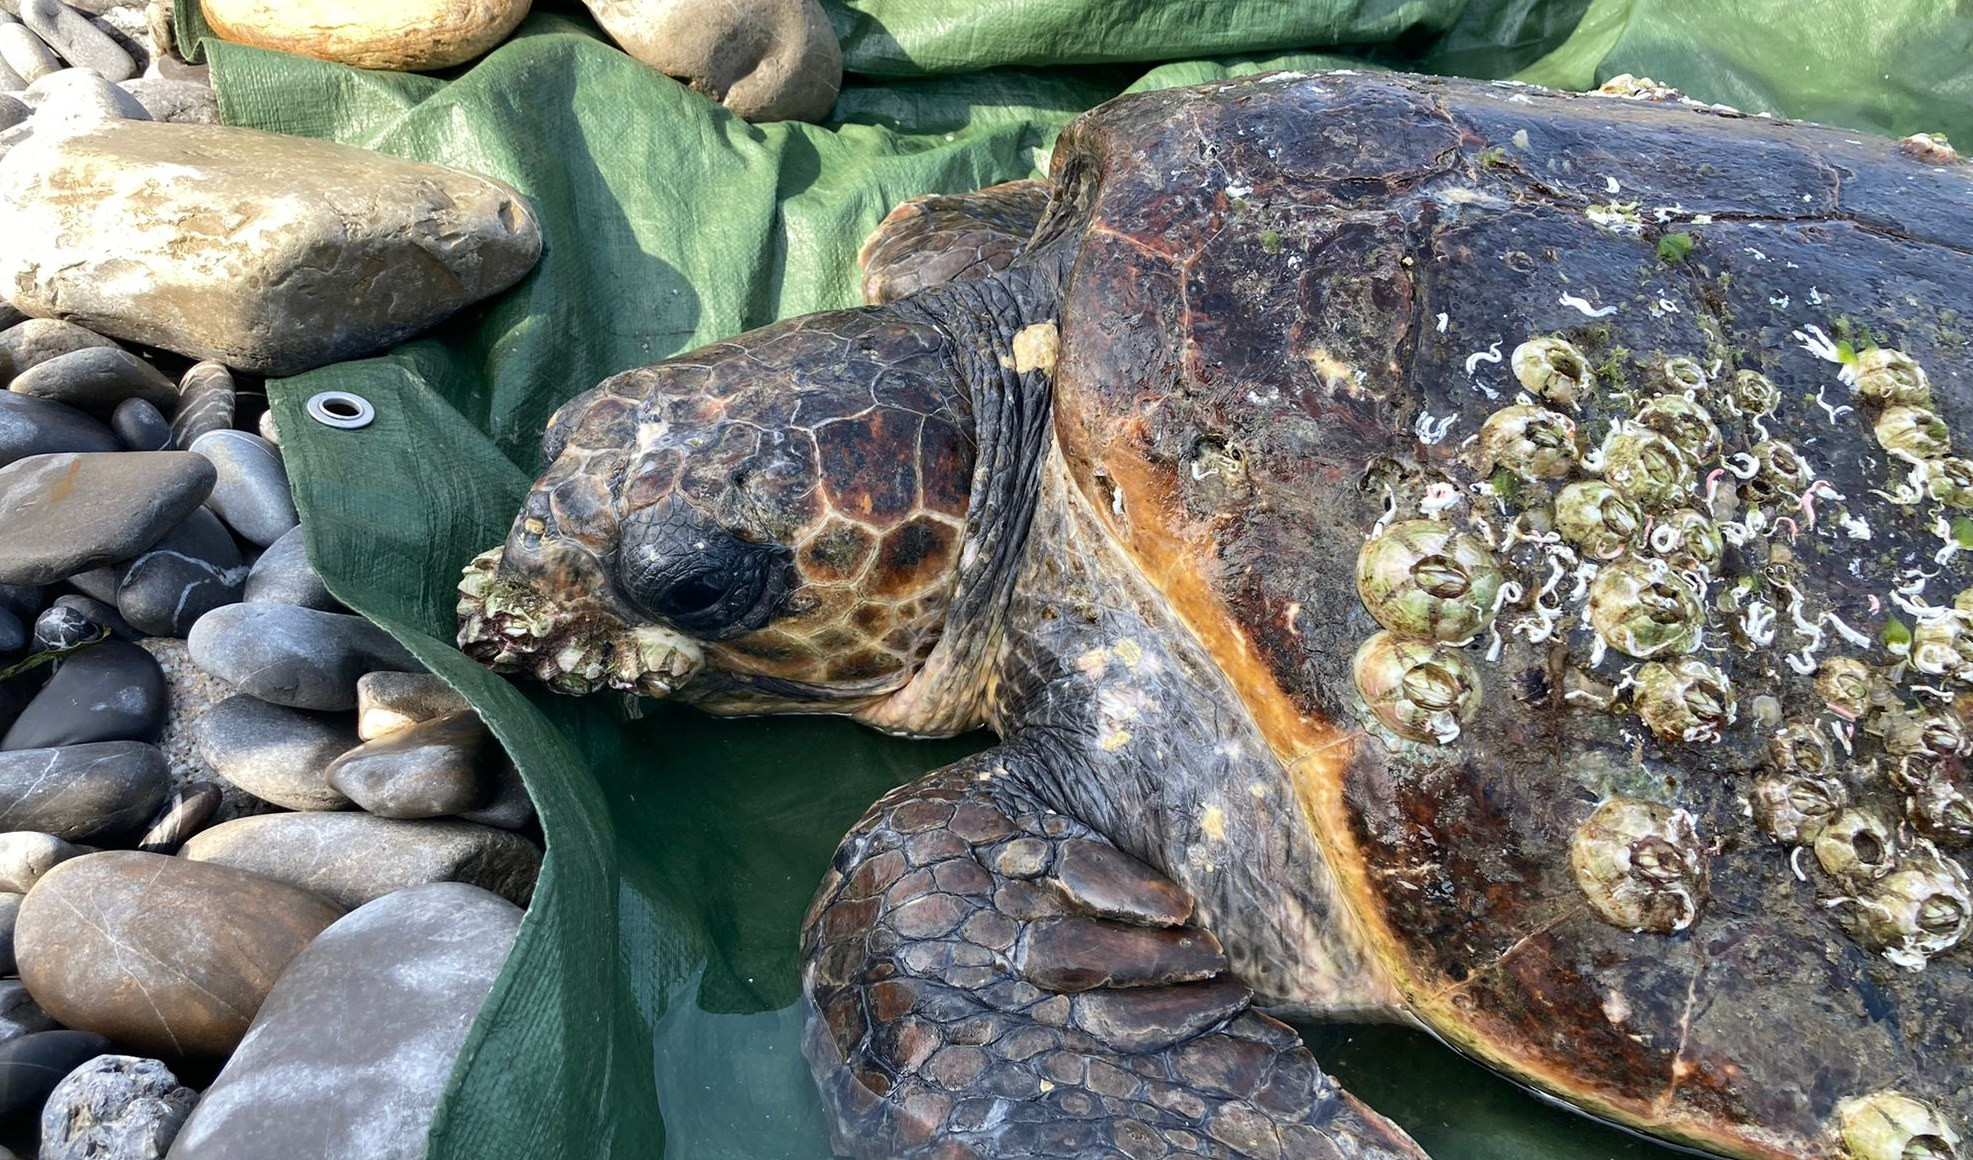 Salvata da bagnino, tartaruga caretta caretta in cura all'Acquario di Genova